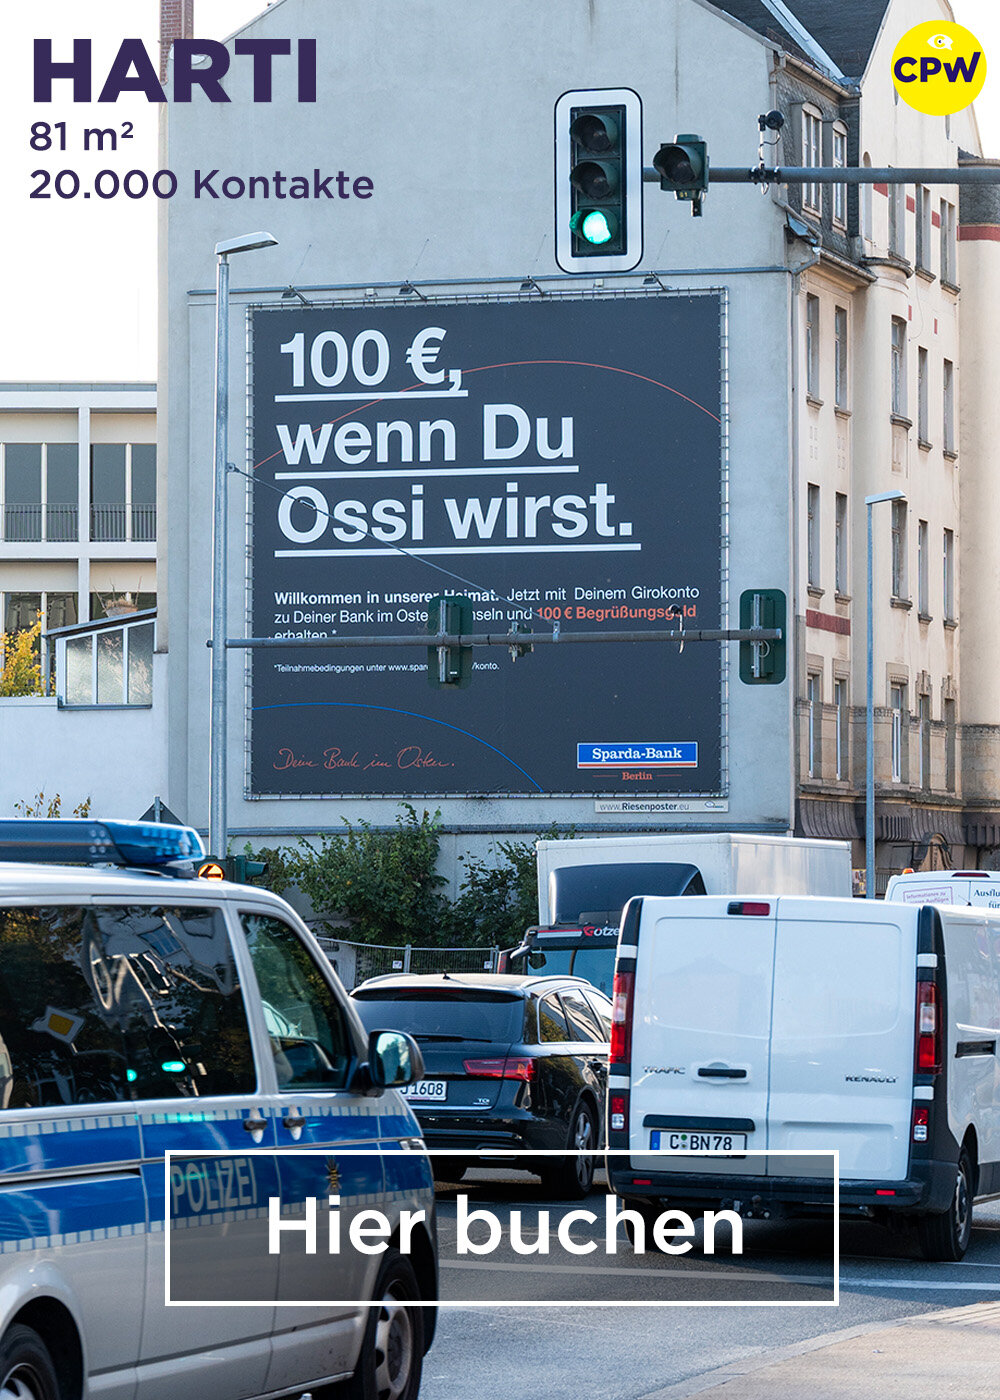 CPW Plakatwerbung Chemnitz - Werbestandort HARTI